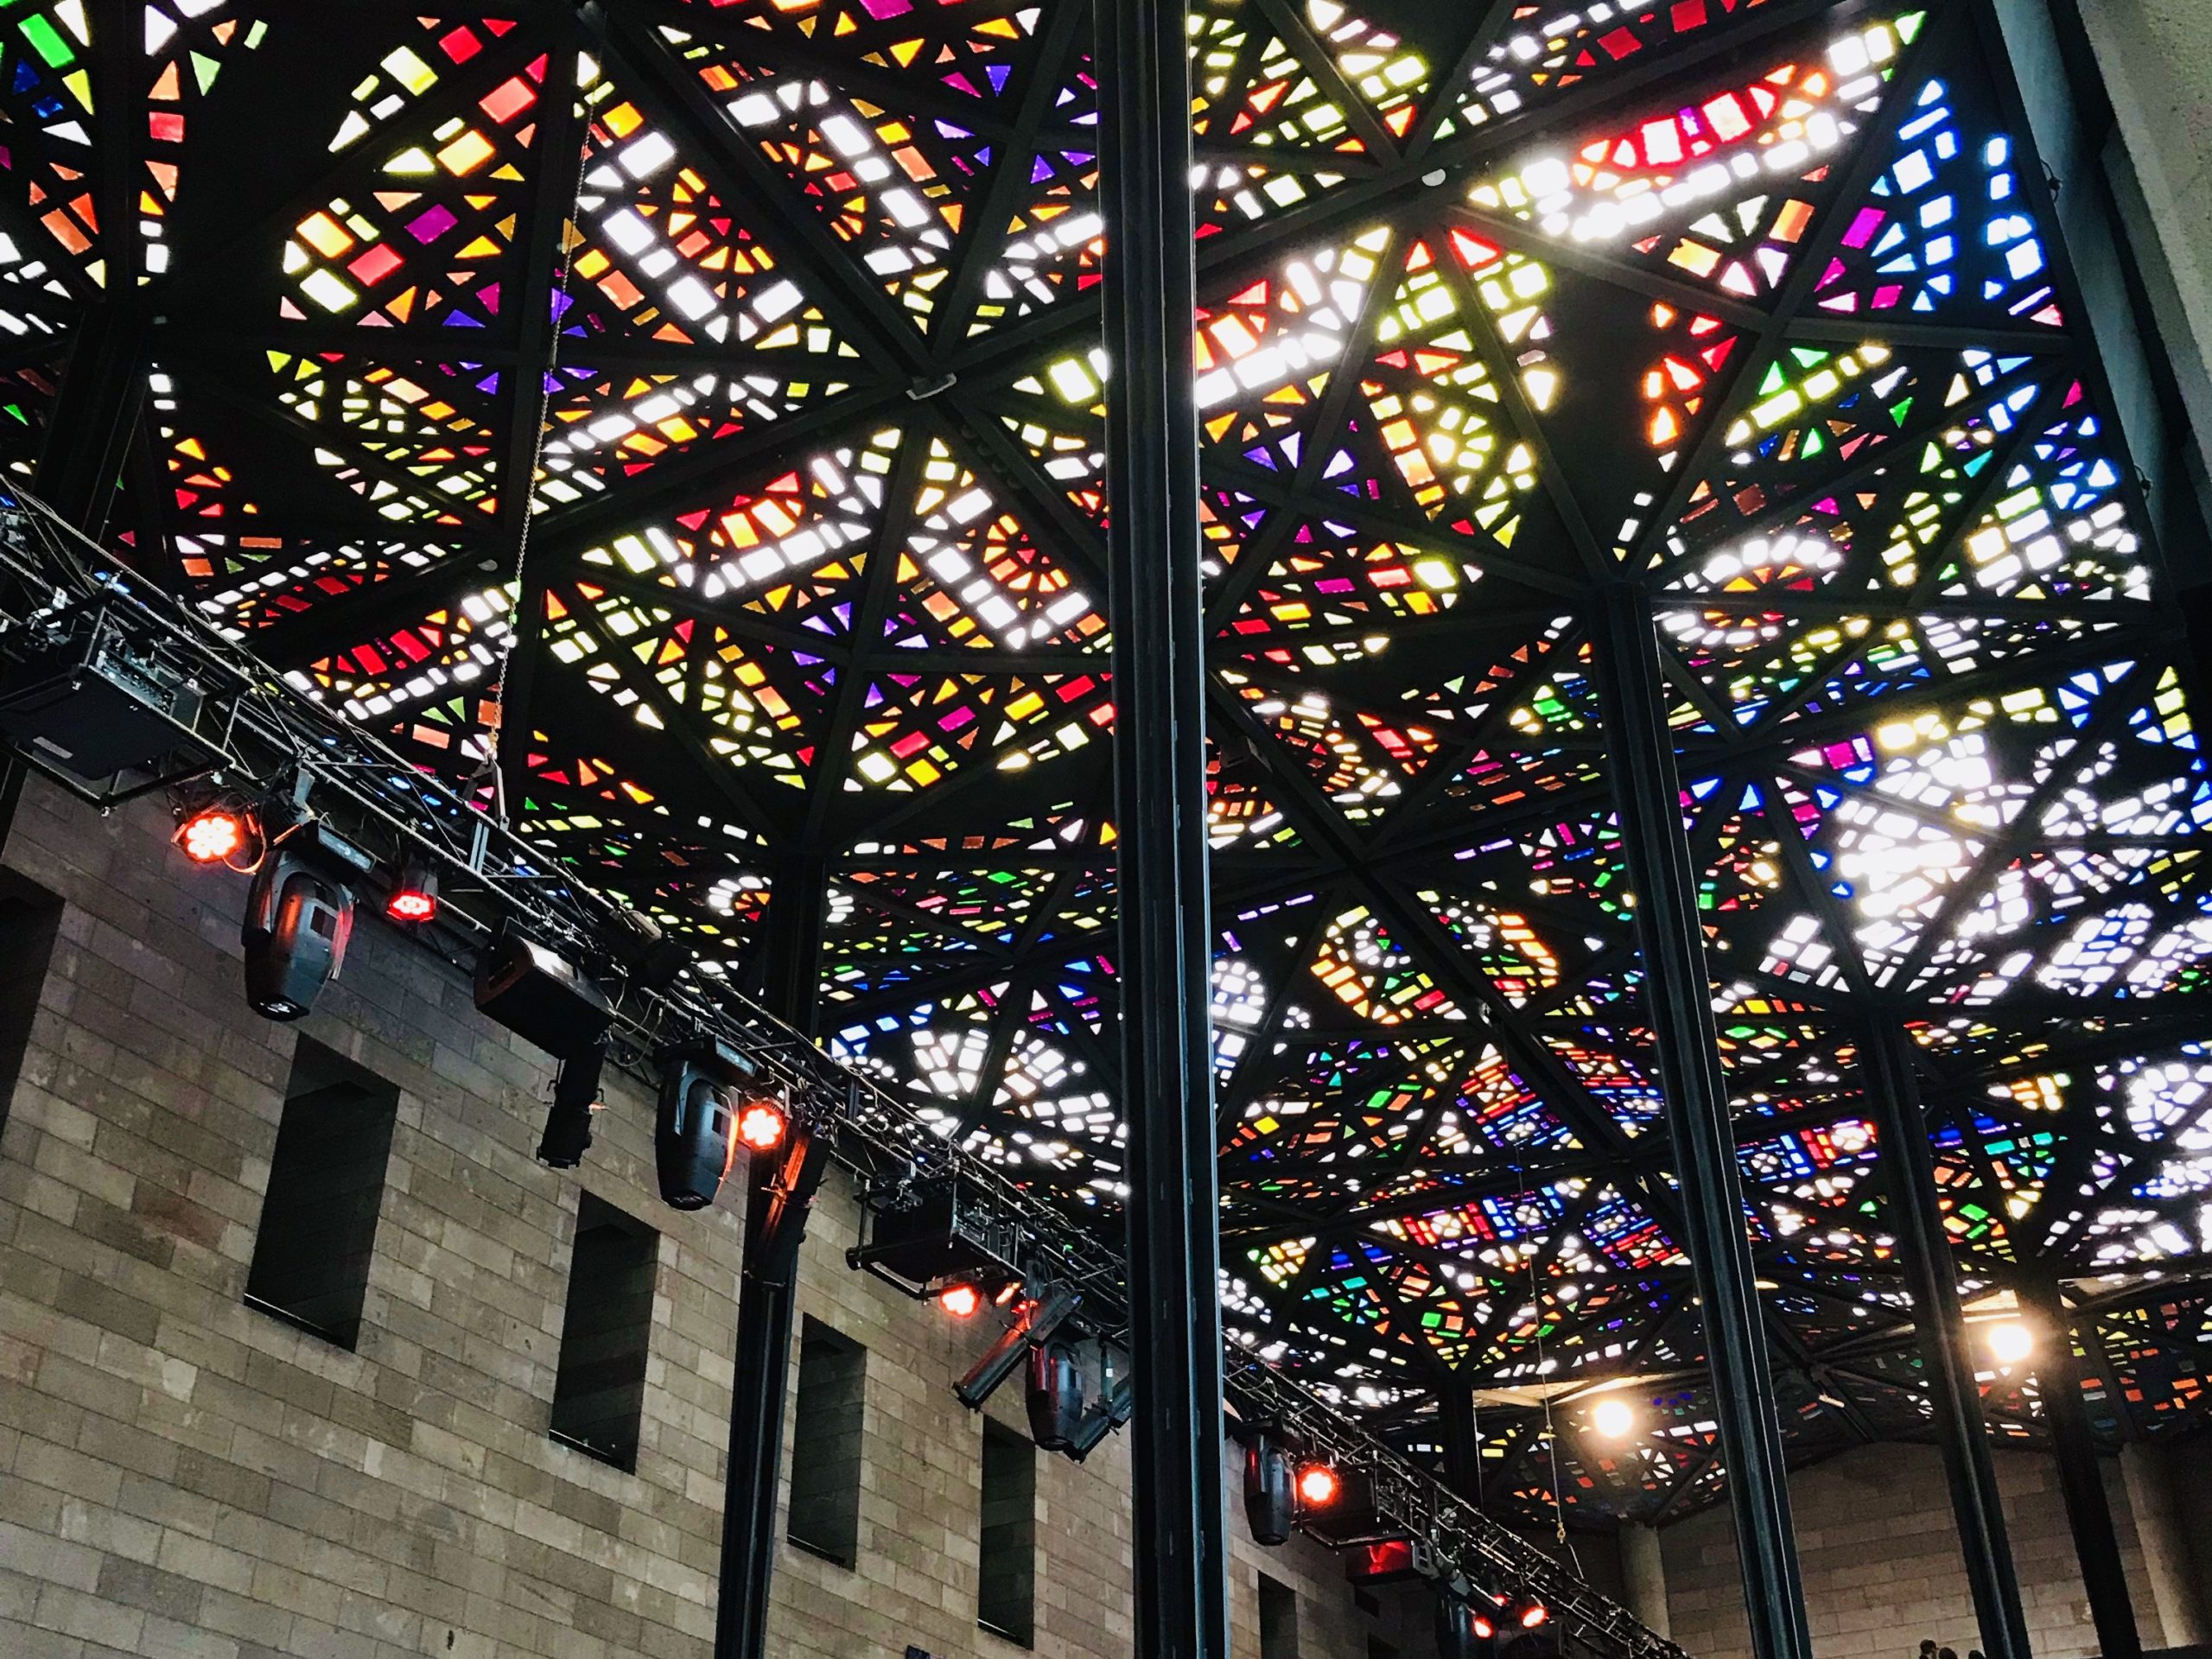 メルボルン 美術館 オーストラリア 観光 おすすめ、ステンドグラス